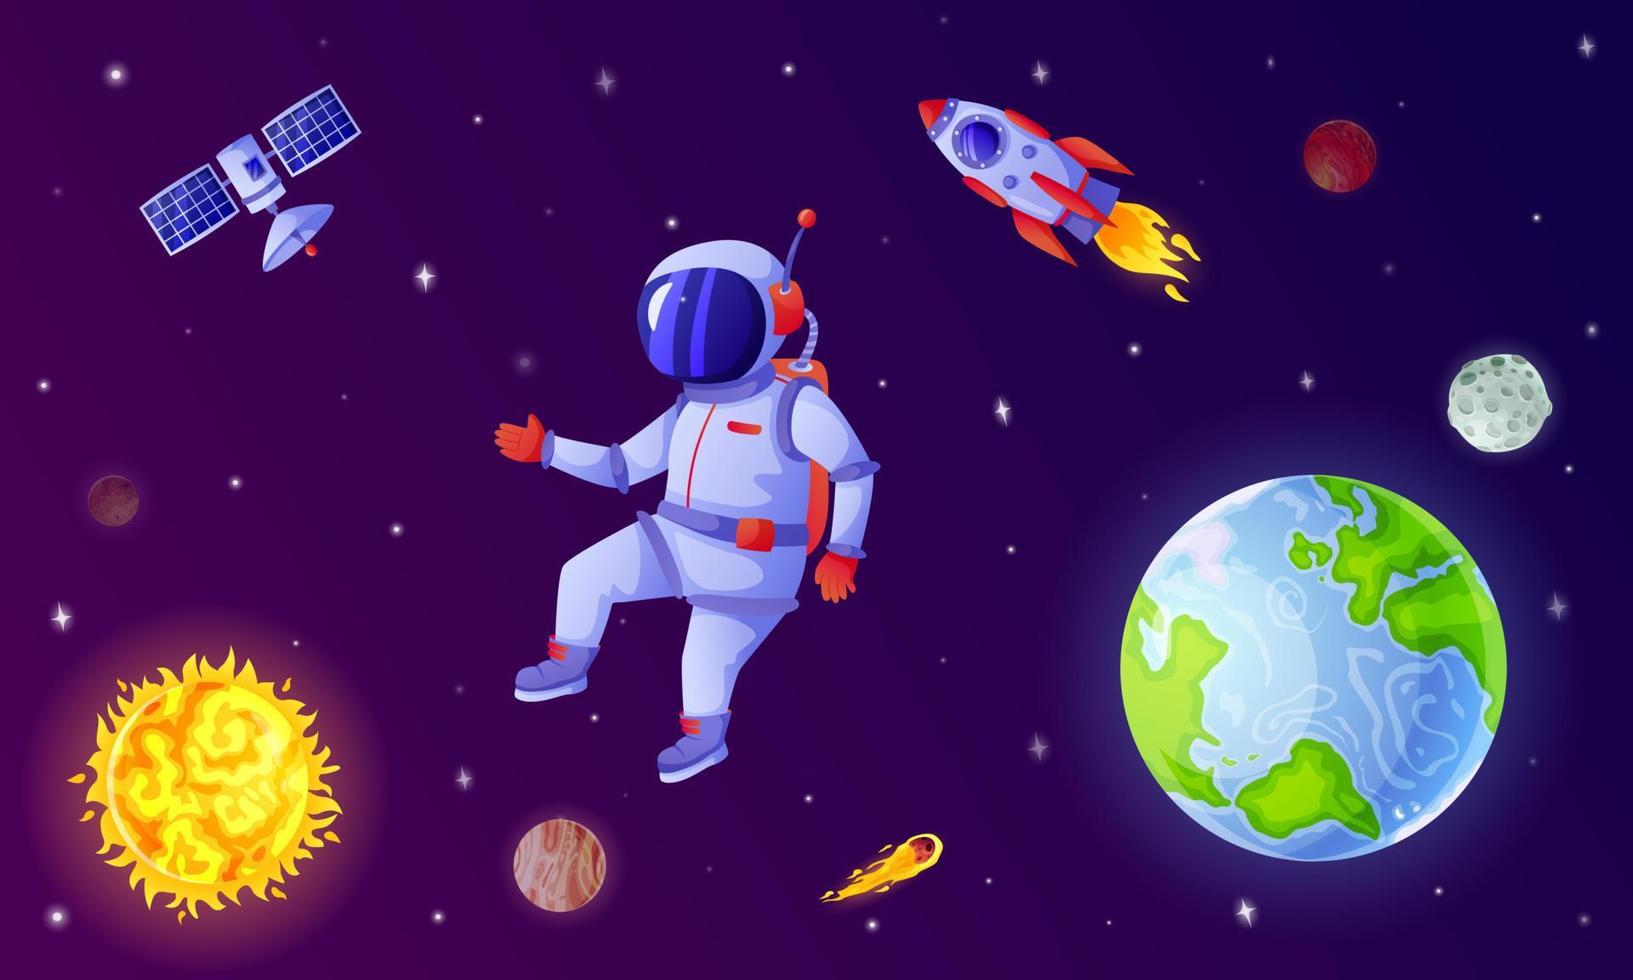 Astronaut im Raum. Kosmonaut fliegend im äußere Raum mit Rakete, Satellit, Planeten, Sterne. Astronaut auf Weltraumspaziergang Karikatur Vektor Illustration